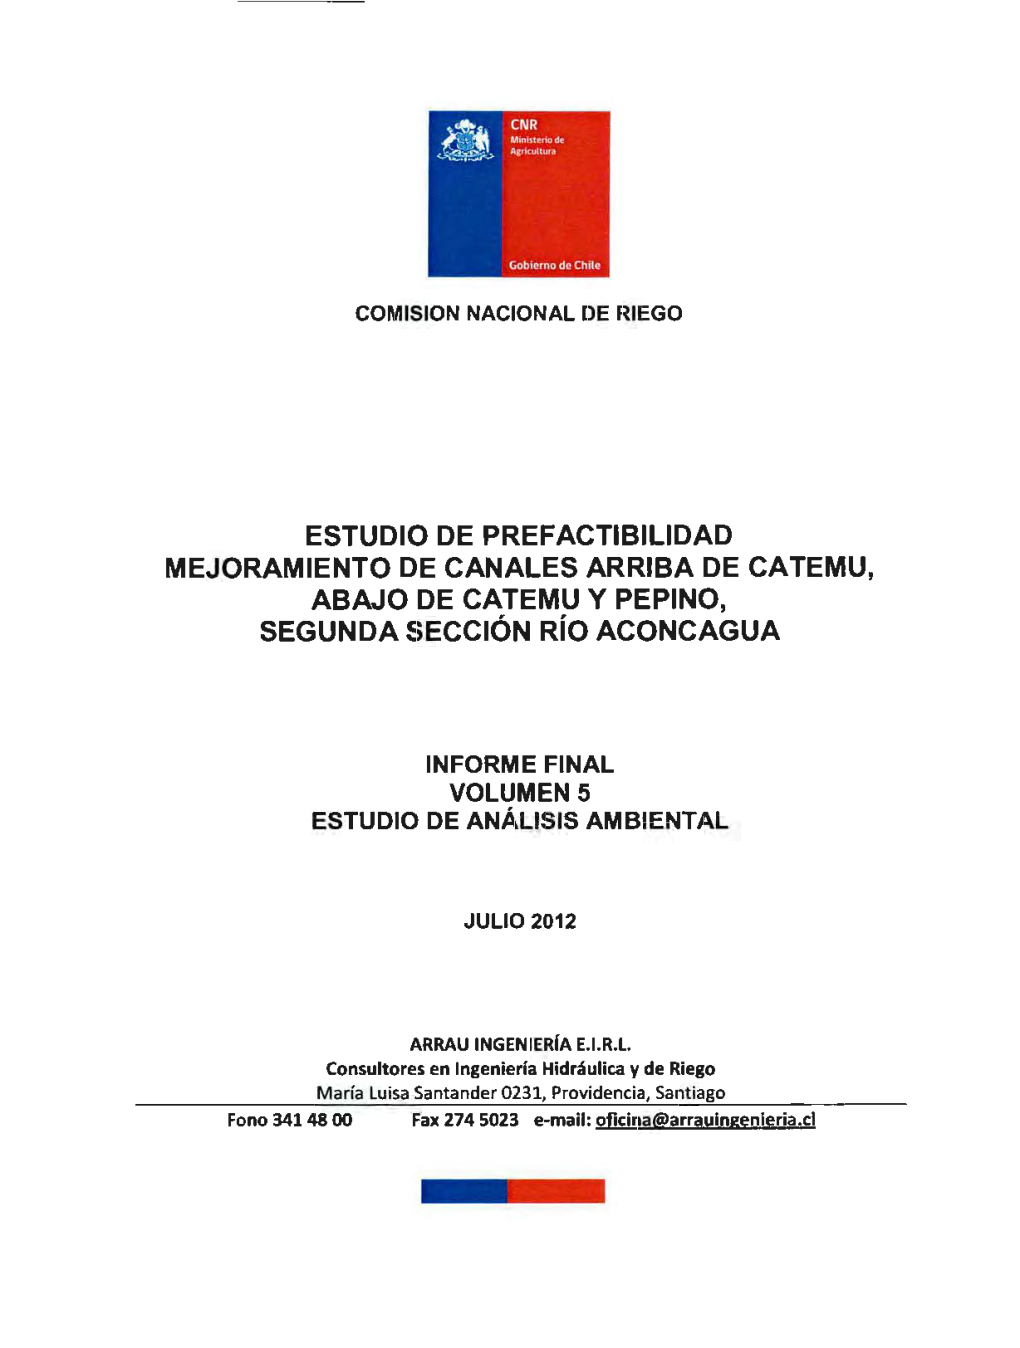 Estudio De Prefactibilidad Mejoramiento De Canales Arriba De Catemu, Abajo De Catemu Y Pepino, Segunda Sección Río Aconcagua